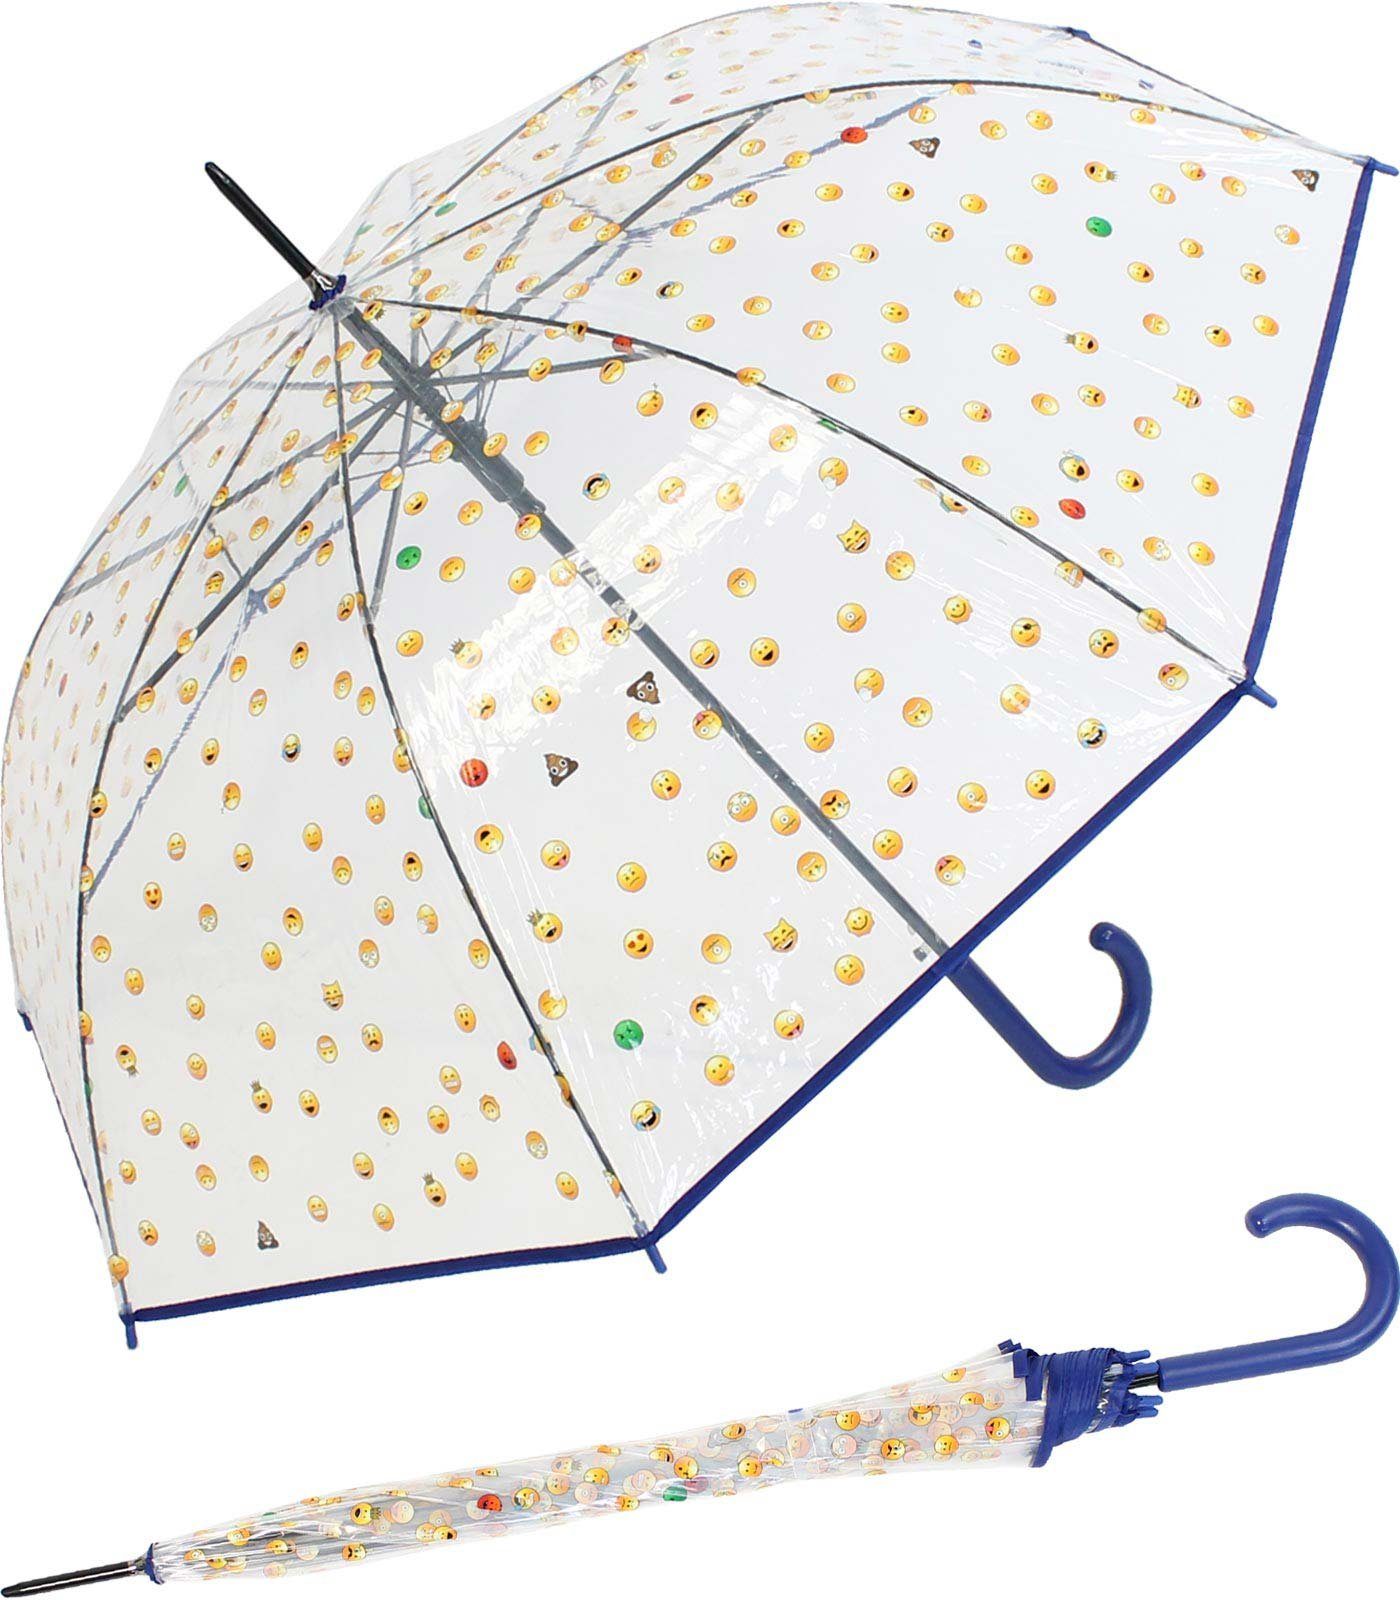 HAPPY RAIN Langregenschirm Emoticon-Transparentschirm mit Automatik, bedruckt mit vielen lustigen Smileys - blau